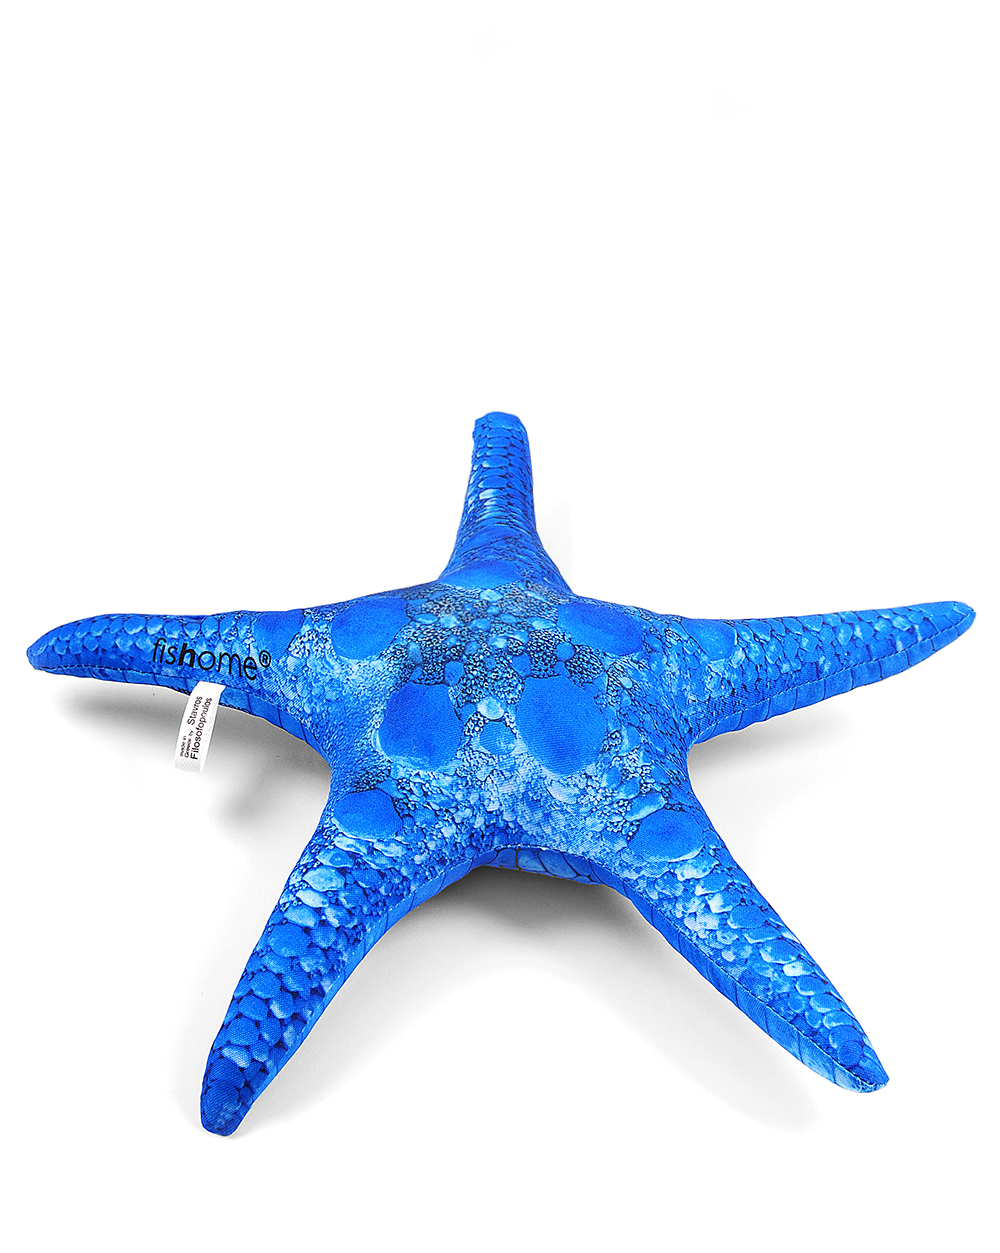 starfish 3